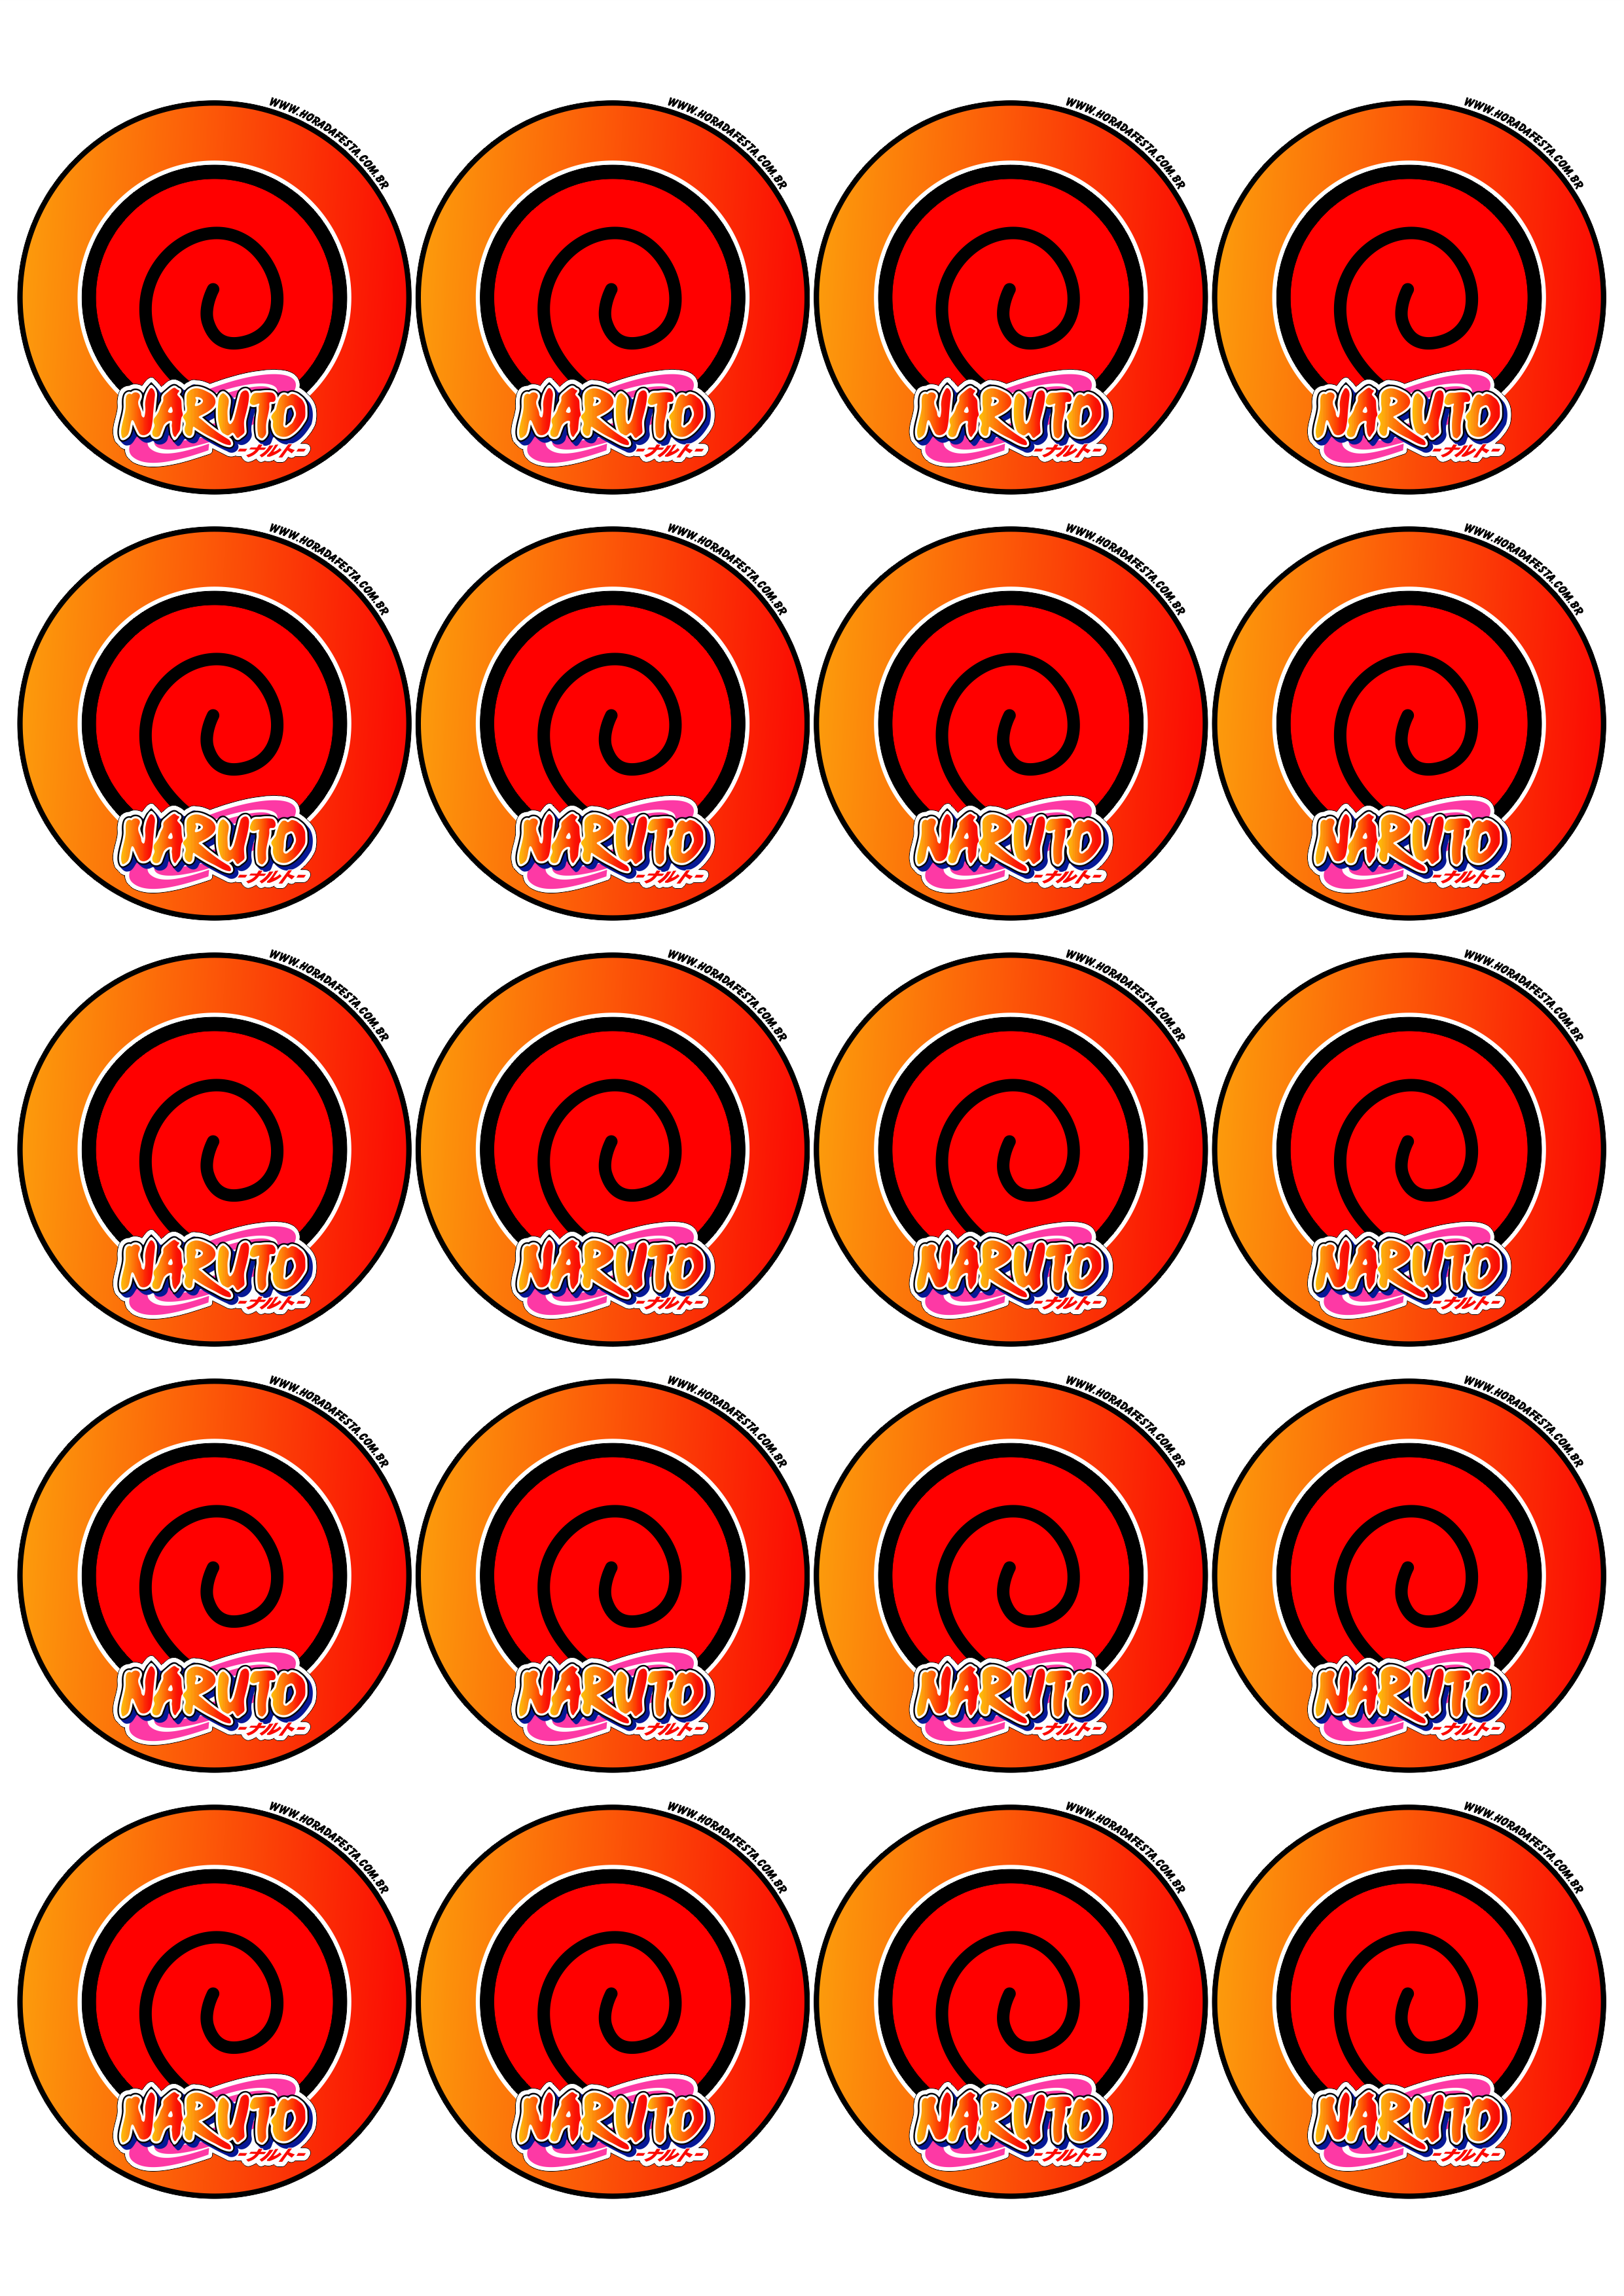 Naruto Shippuden adesivo redondo símbolo clã Uzumaki decoração de festas artigos de papelaria tag sticker 20 imagens png